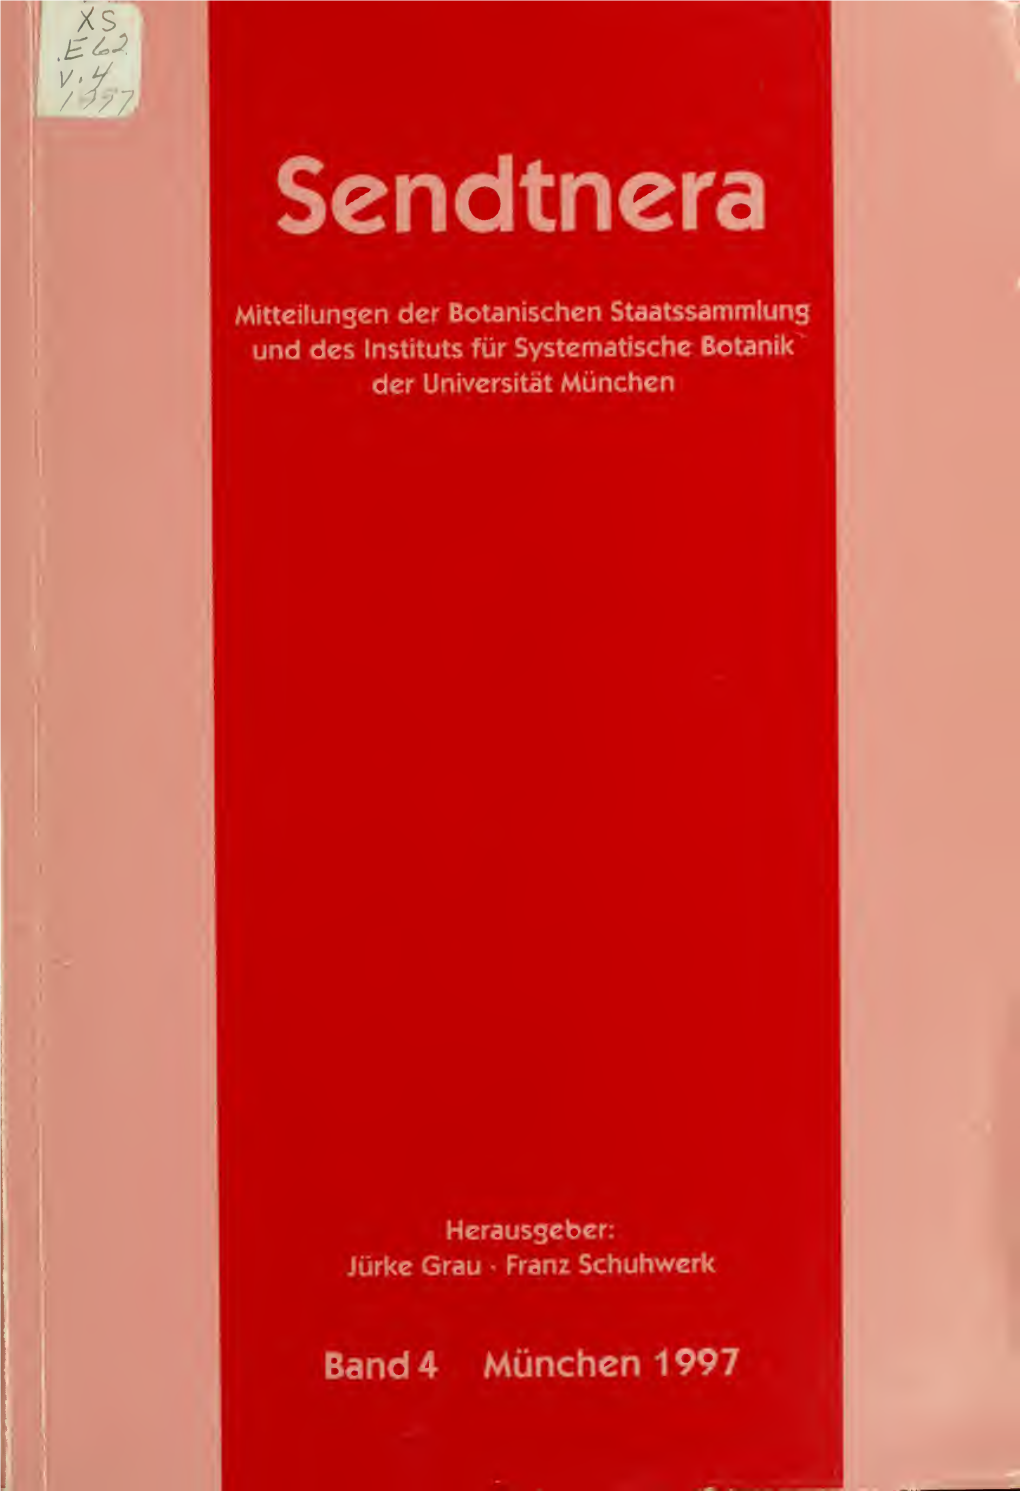 Sendtnera : Mitteilungen Der Botanischen Staatssammlung Und Des Instituts Für Systematische Botanik Der Universitat Munchen